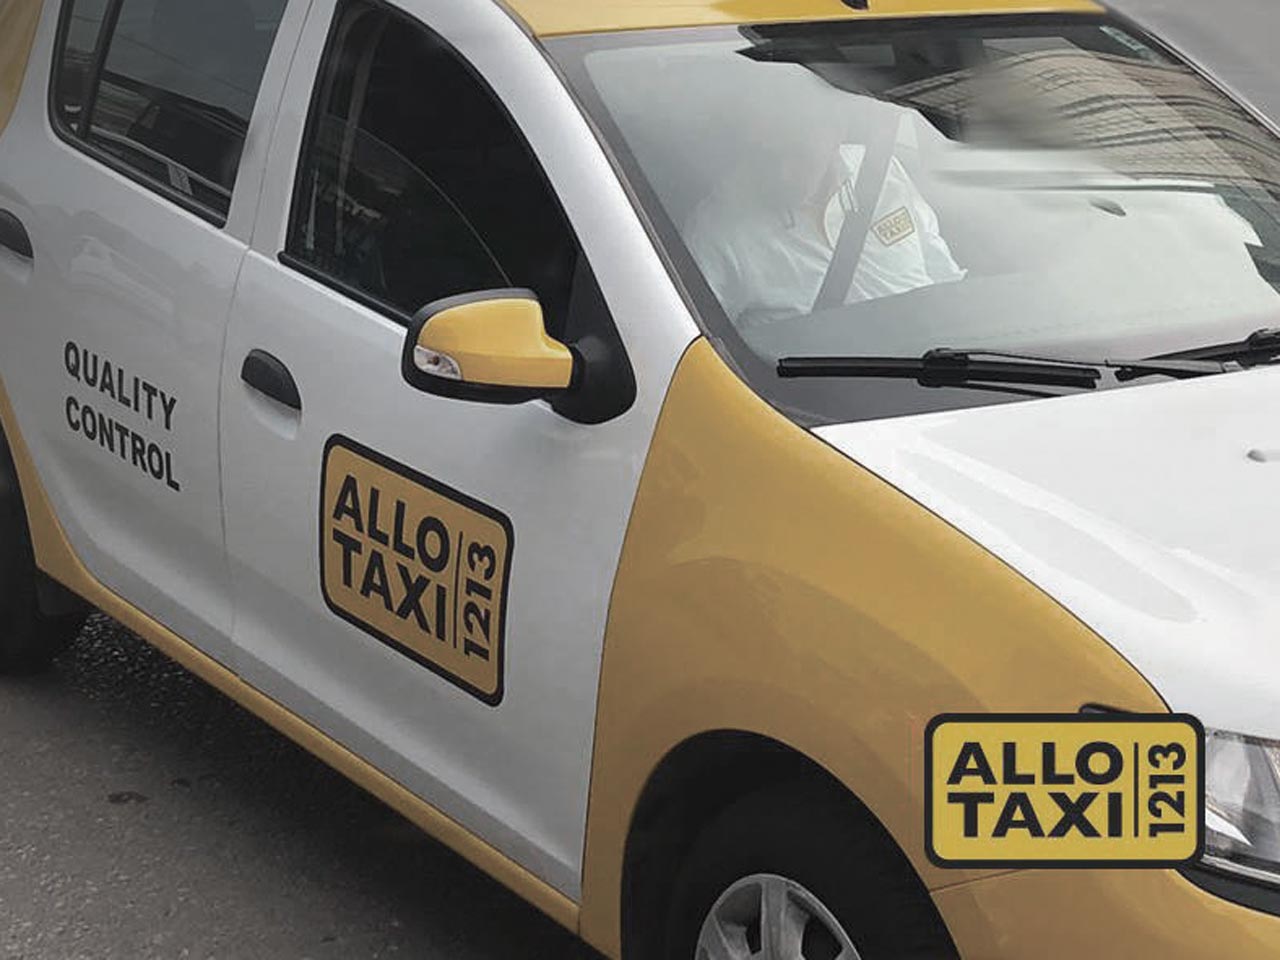 Allo Taxi